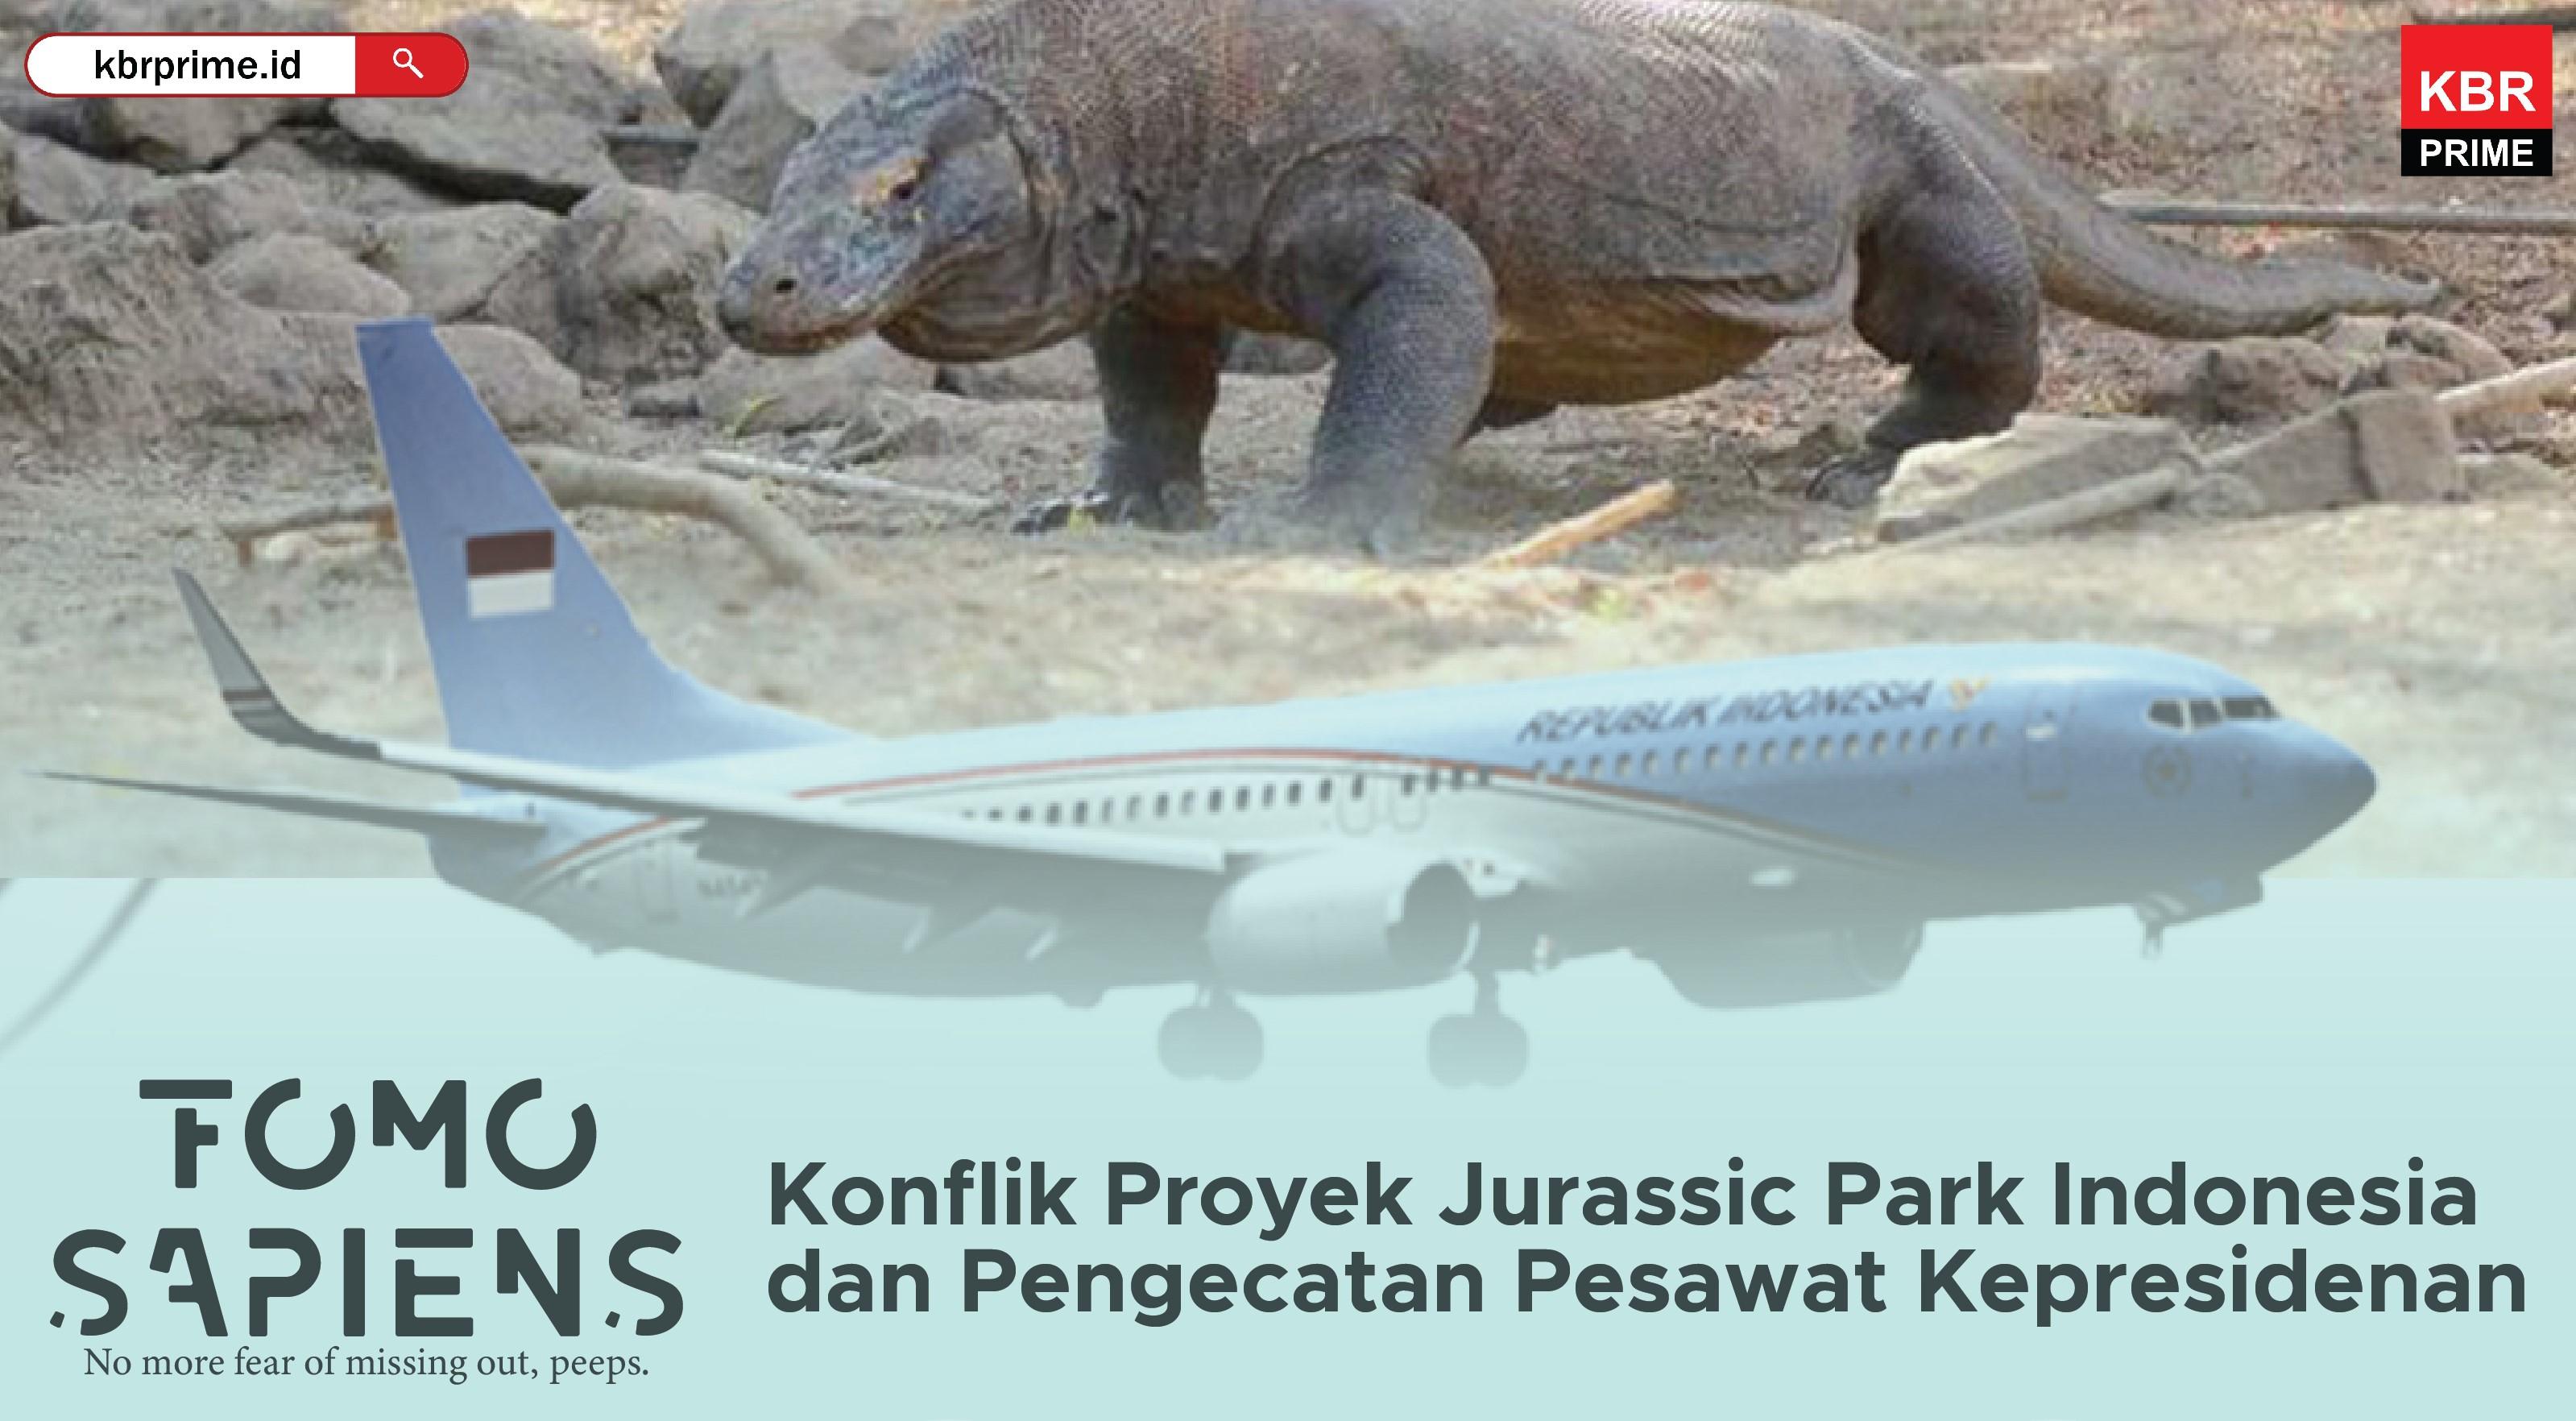 FOMO Sapiens : Konflik Proyek Jurassic Park Indonesia dan Pengecatan Pesawat Kepresidenan